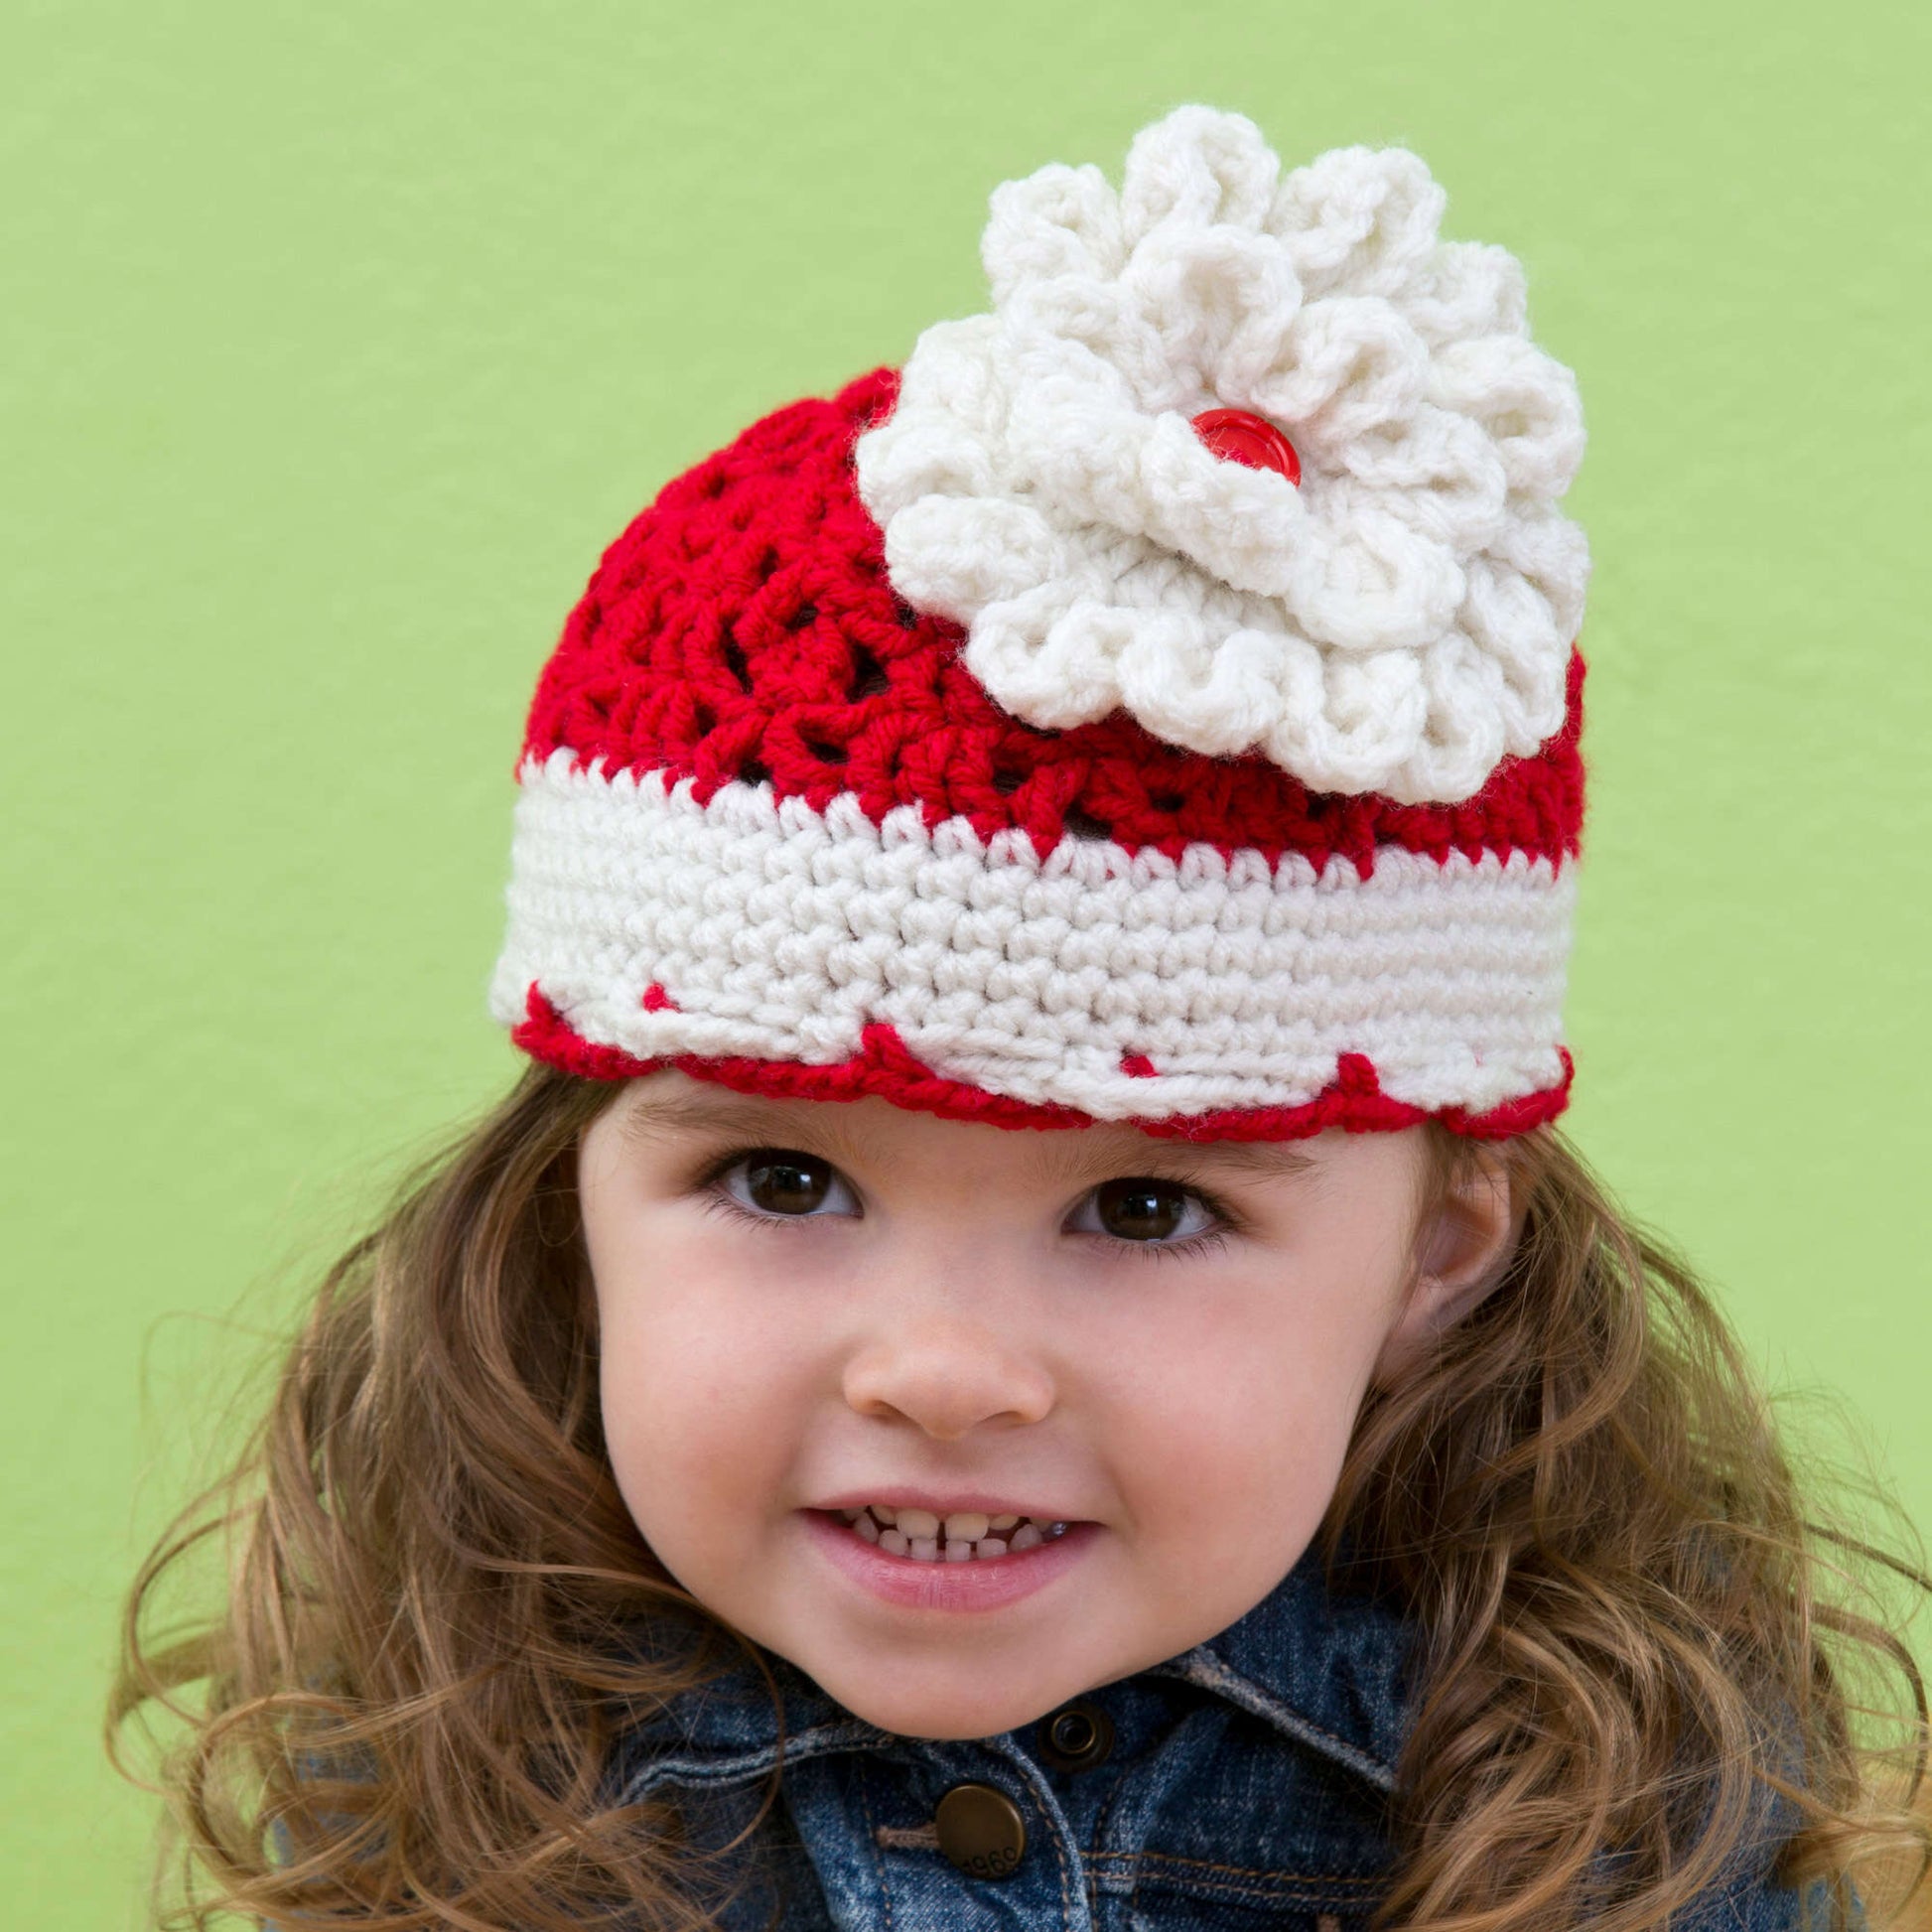 Free Red Heart Crochet Big Bloom Hat Pattern